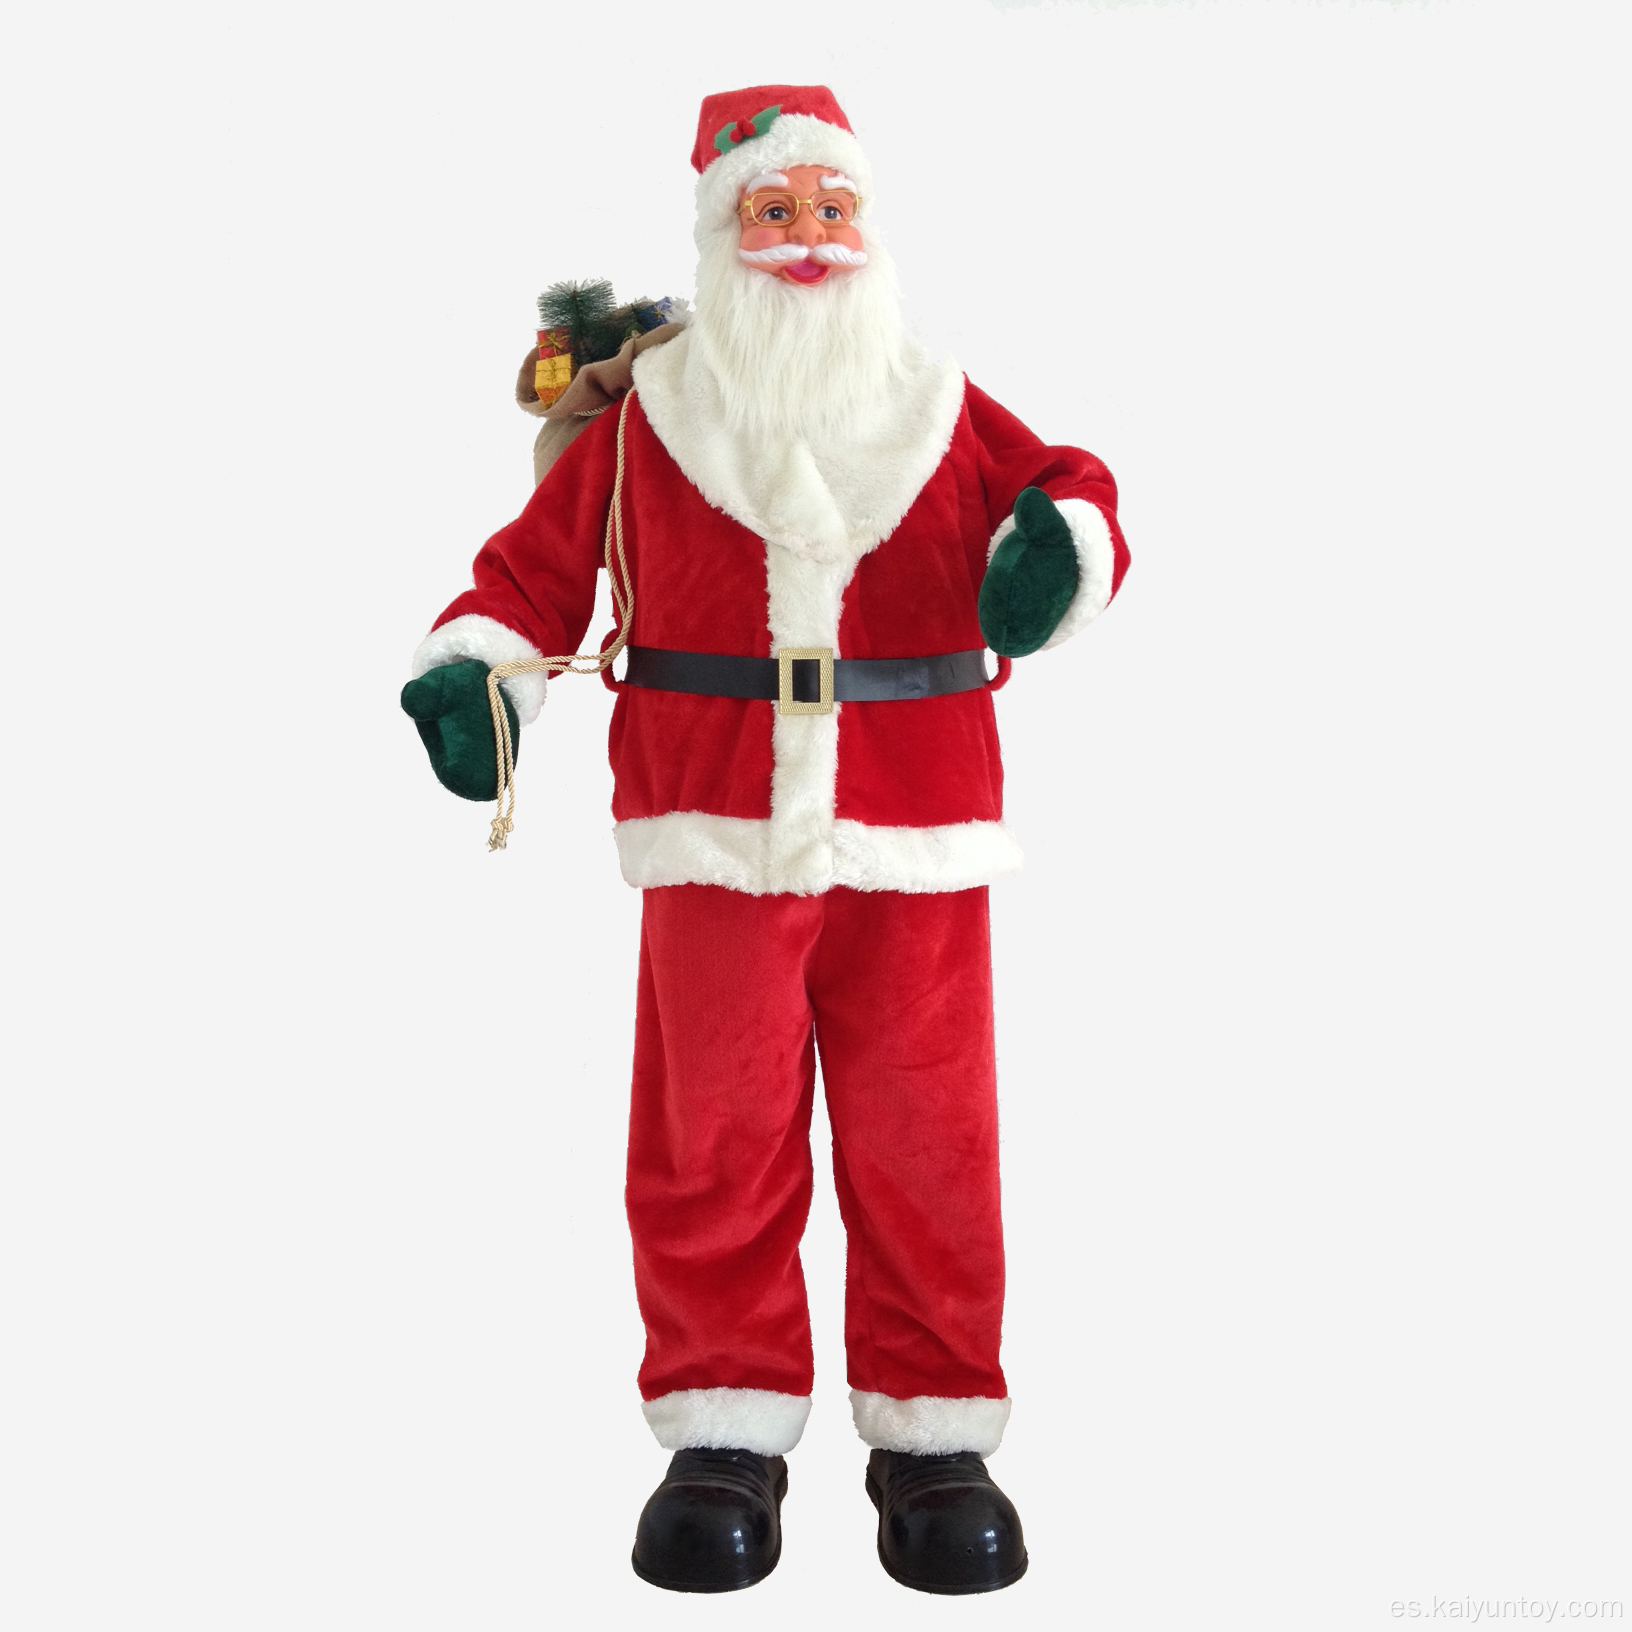 Decoraciones navideñas de pie de una muñeca de Santa